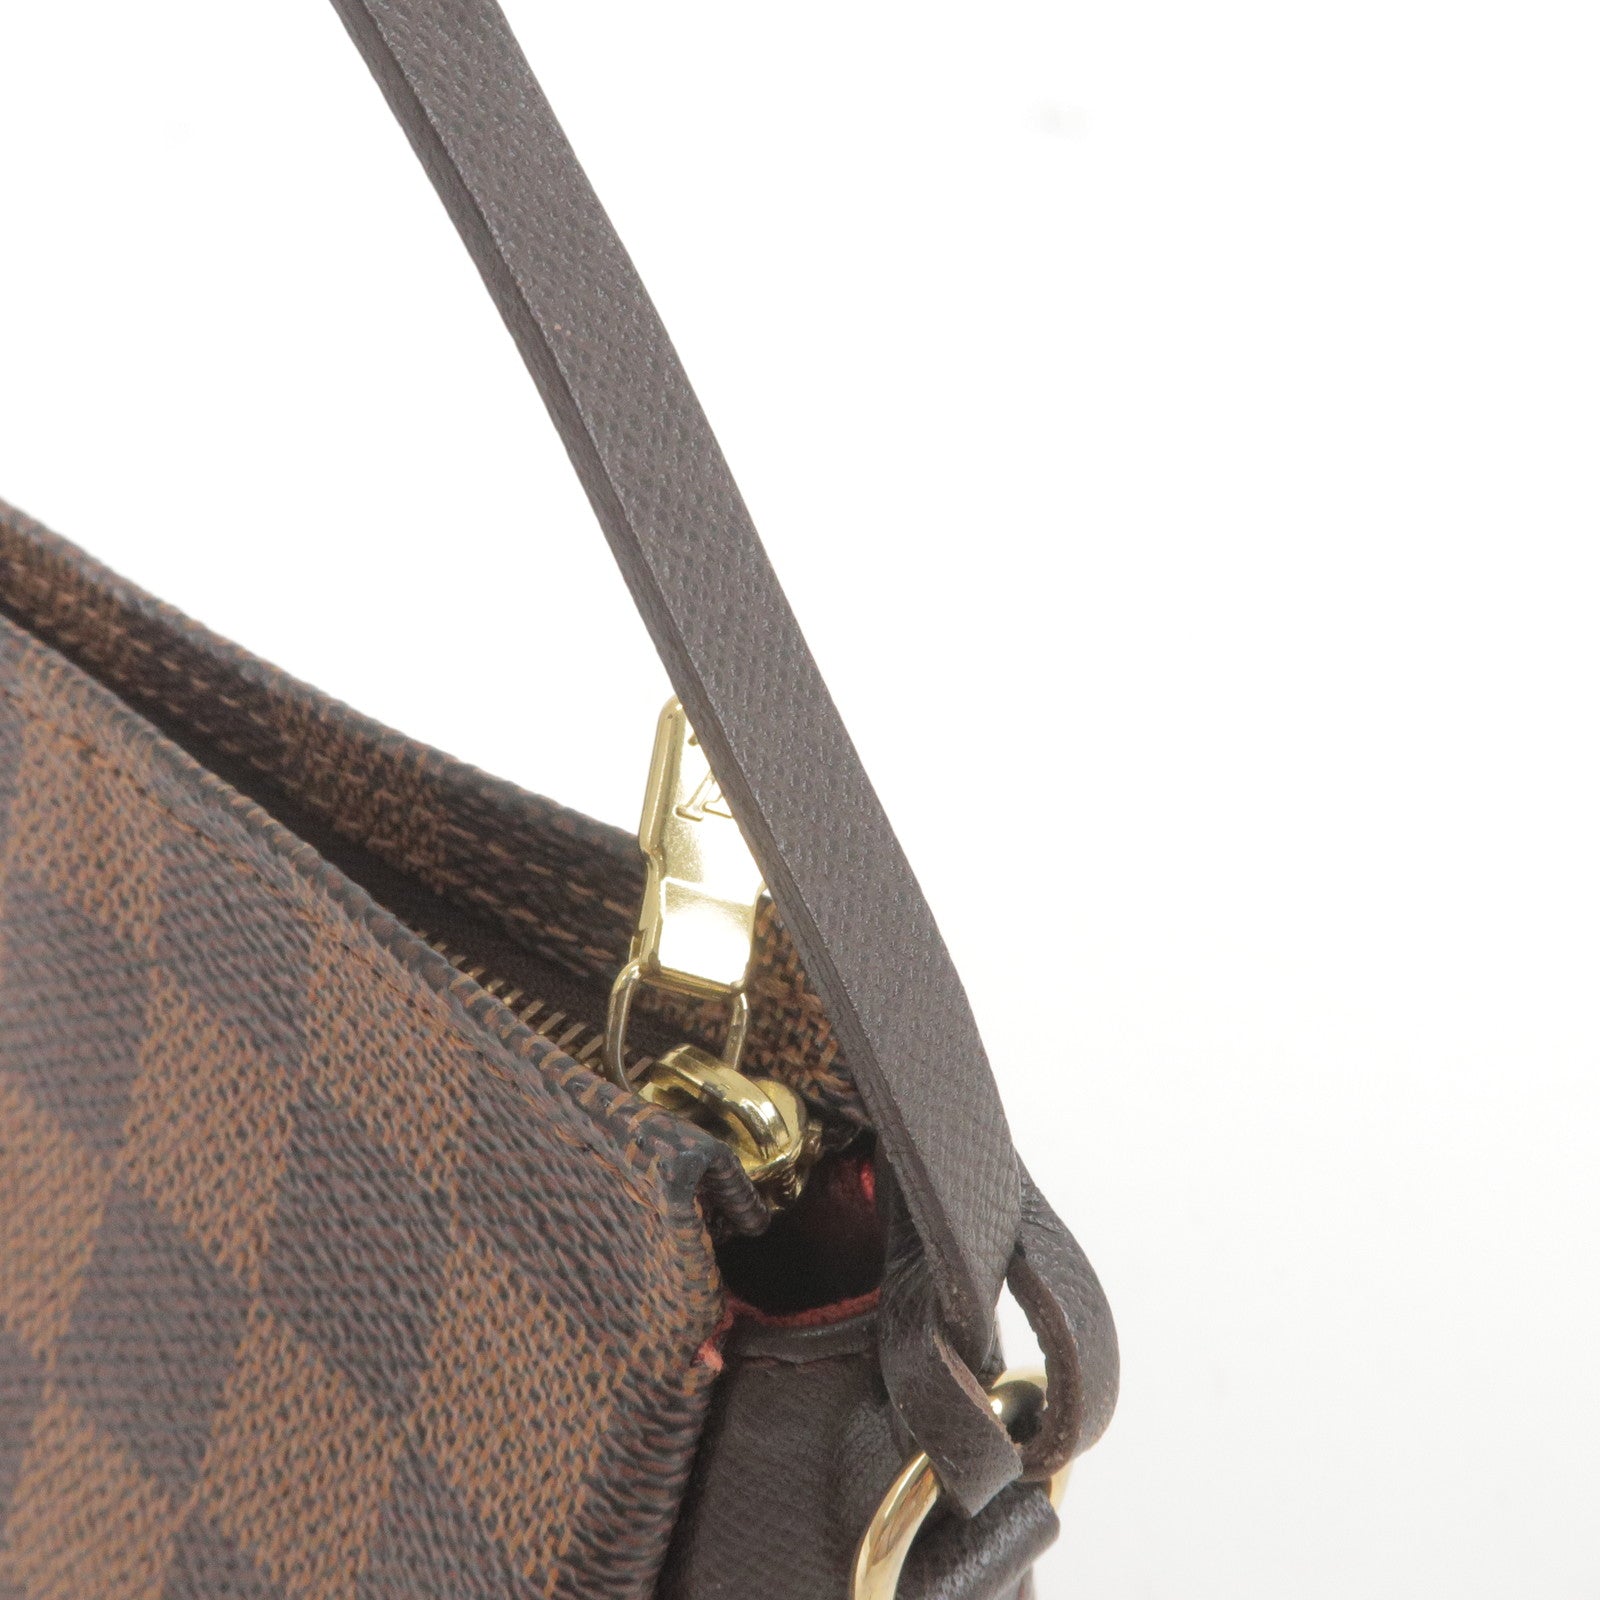 Preloved Louis Vuitton Cuff Link / Air Pod Case Damier Ebene